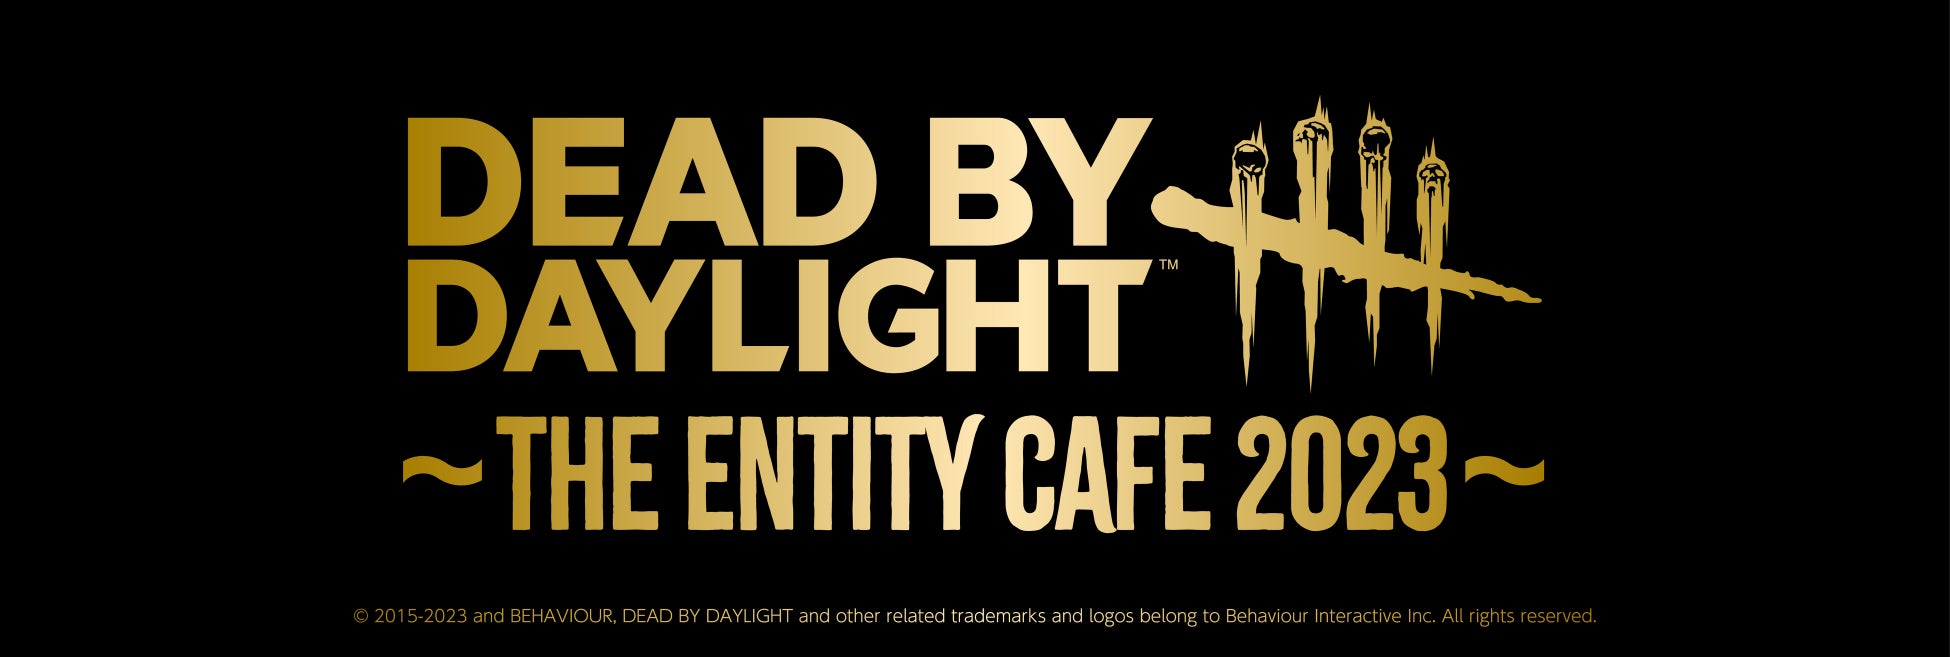 現在開催中の「Dead by Daylight ～The Entity Cafe 2023～」の地方開催情報をお知らせします。